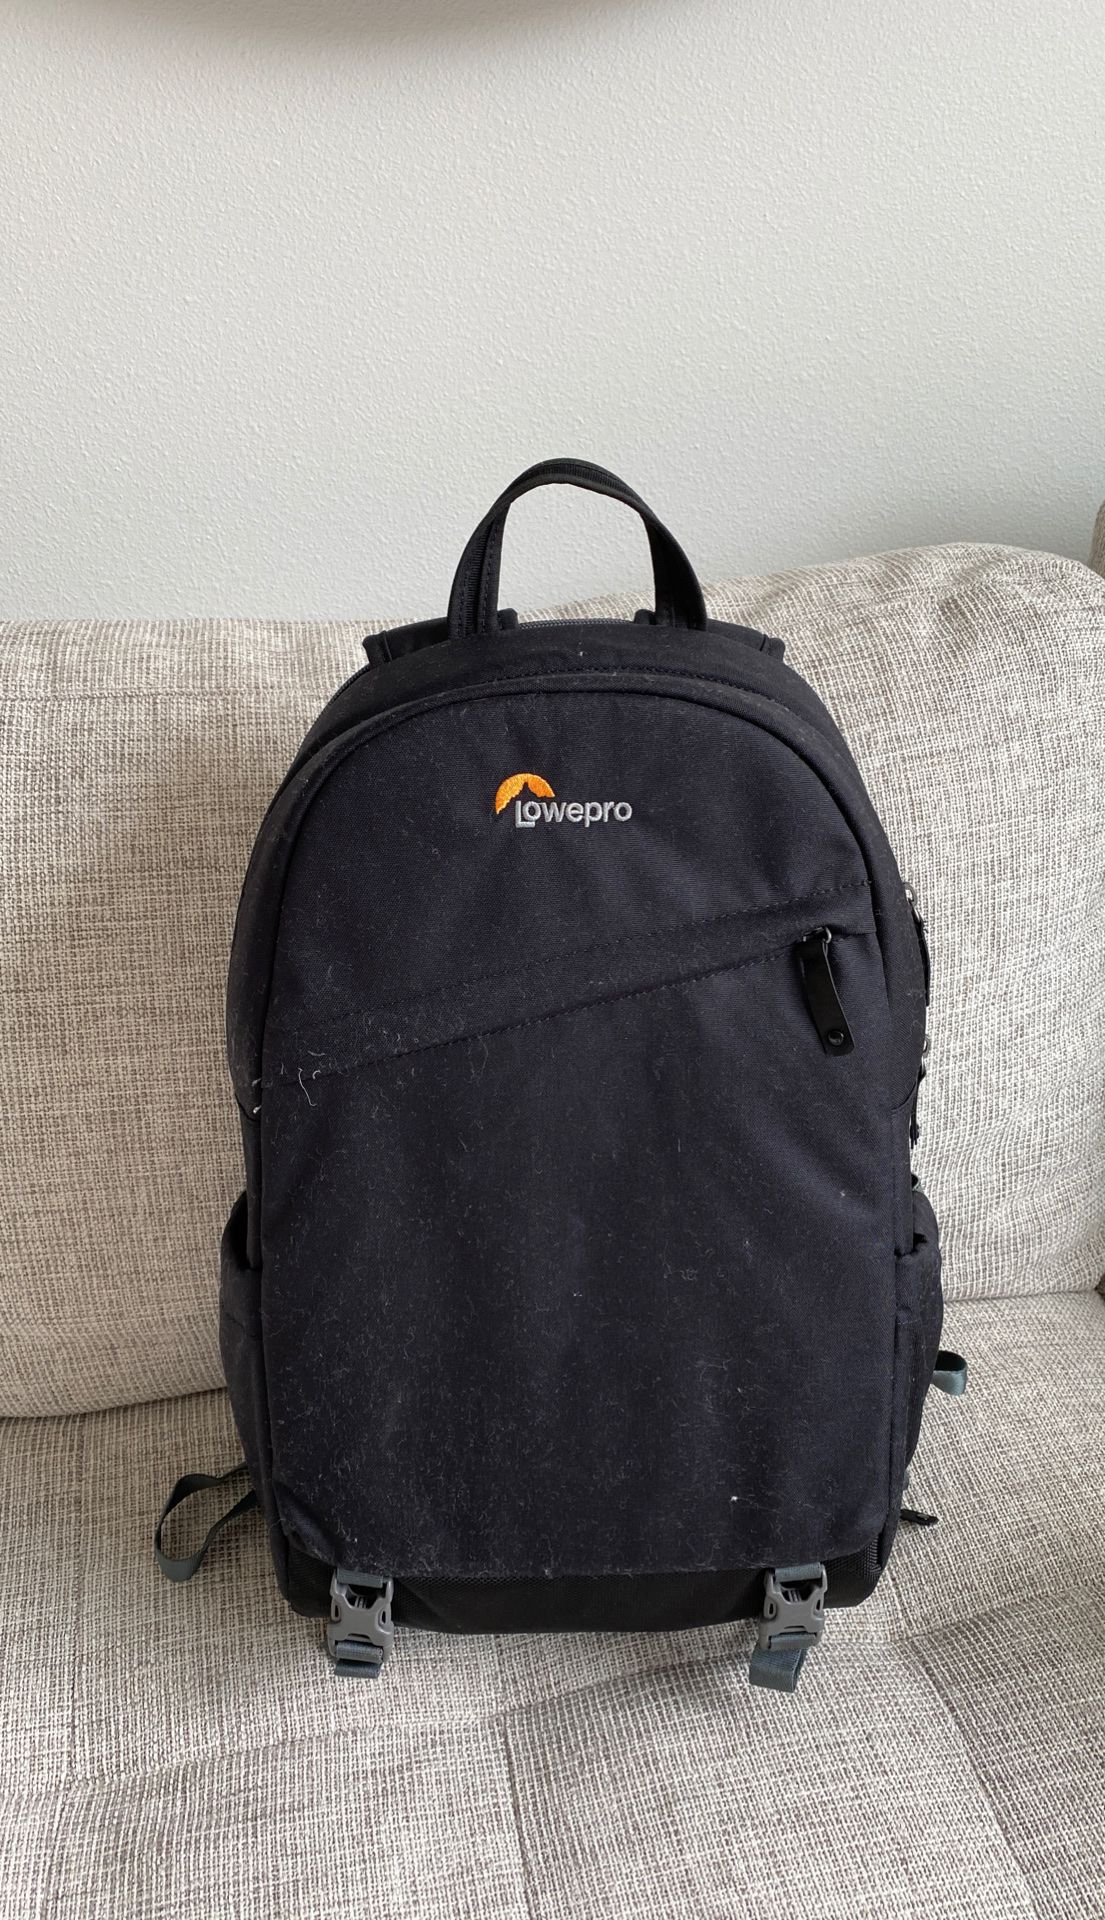 Lowepro Camera Backpack Trekker BP 150 Brand New